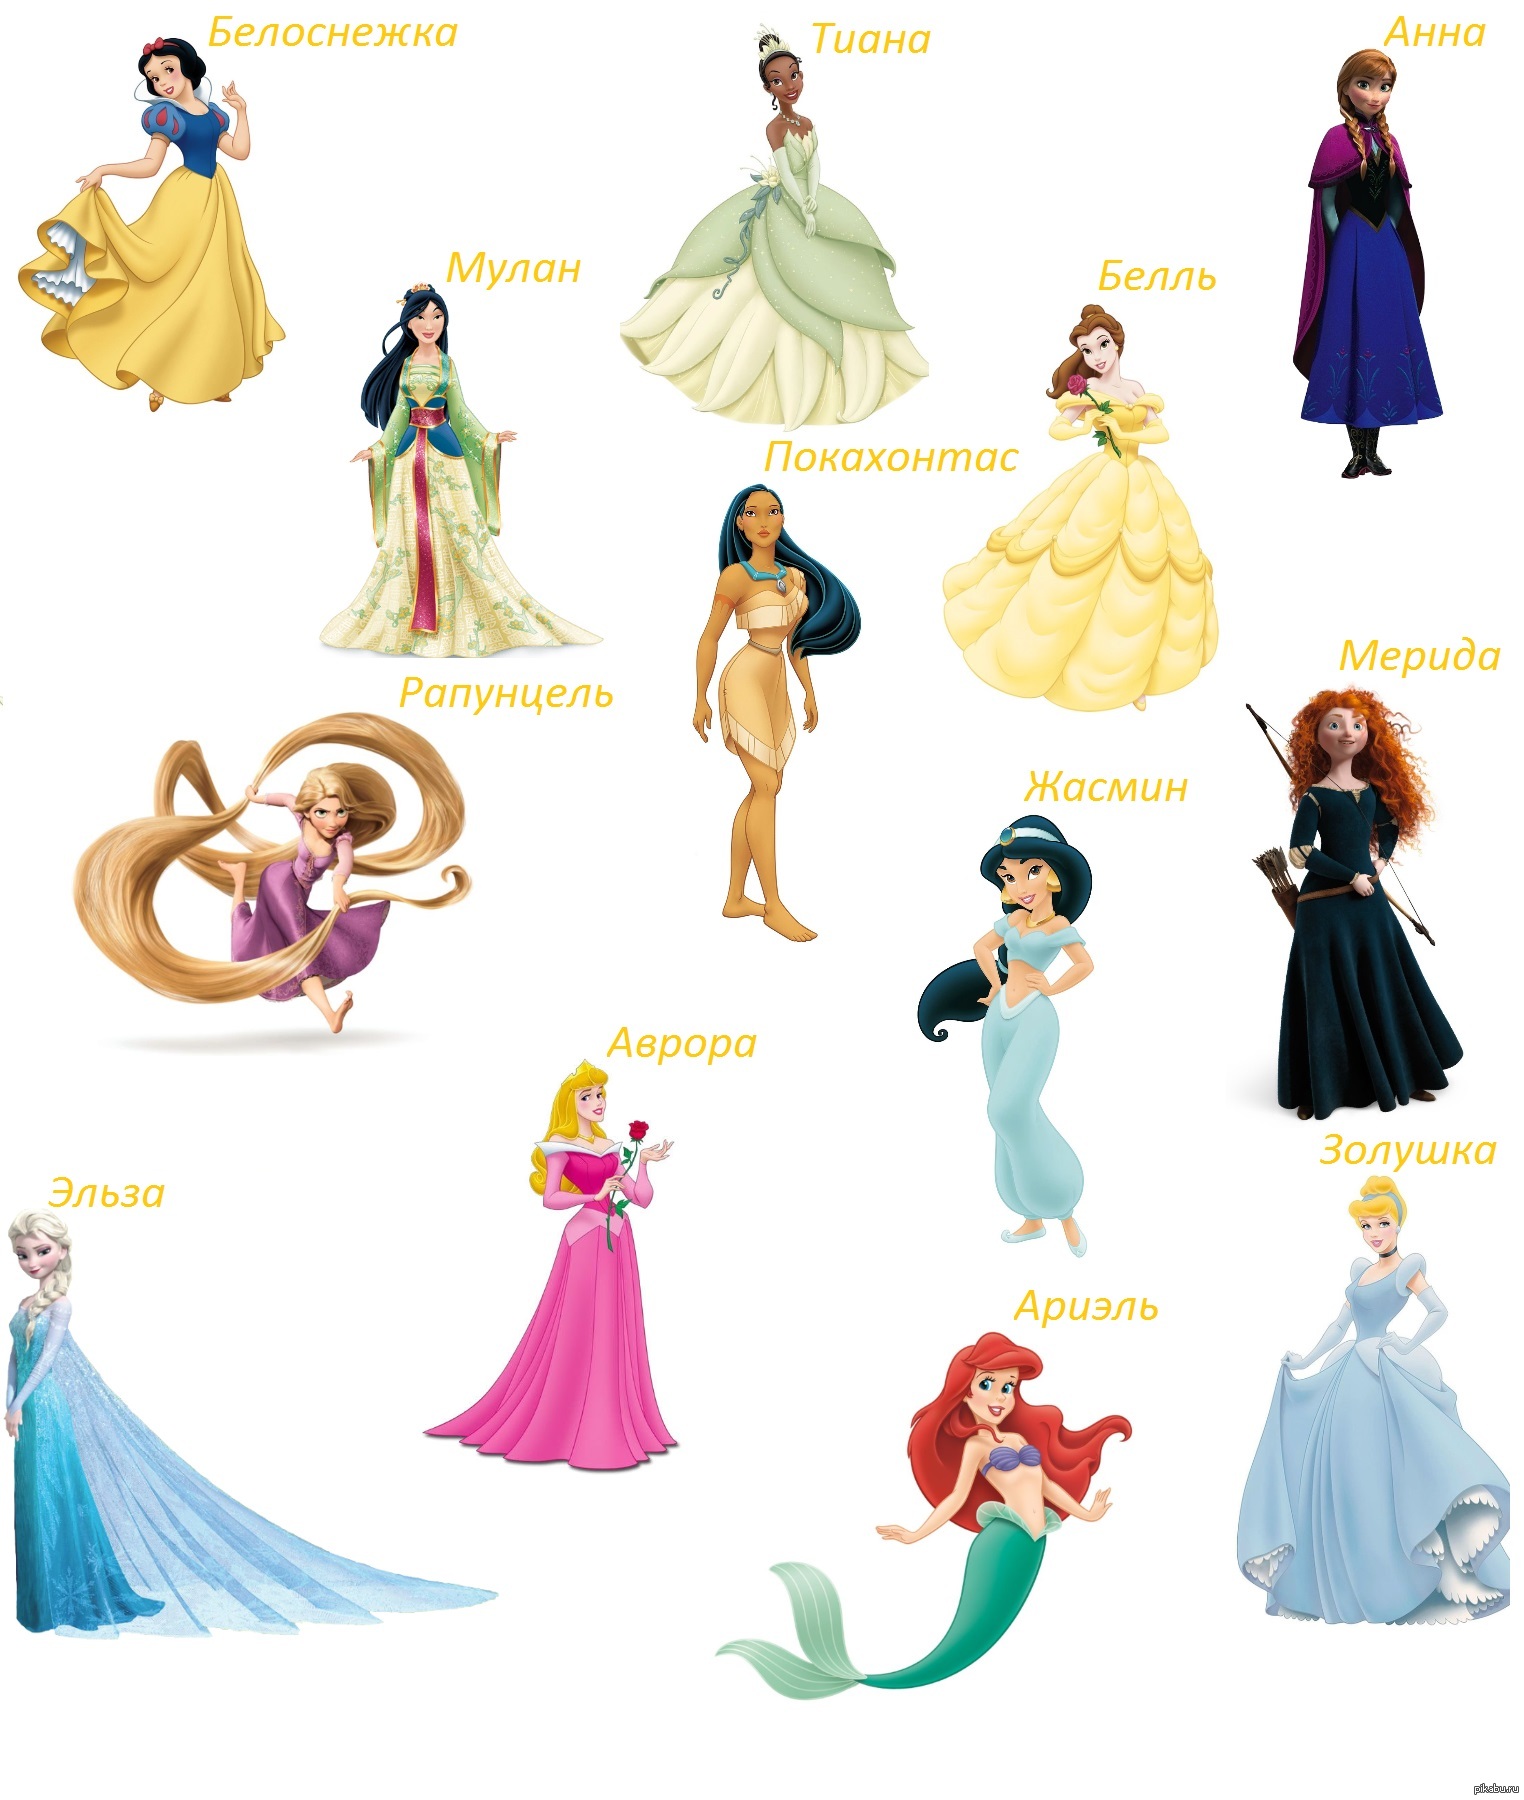 Как звали принцессу. Как зовут принцесс Диснея. Принцессы Disney и их имена. Принцессы Дисней по именам список. Принцессы Диснея с именами на русском.